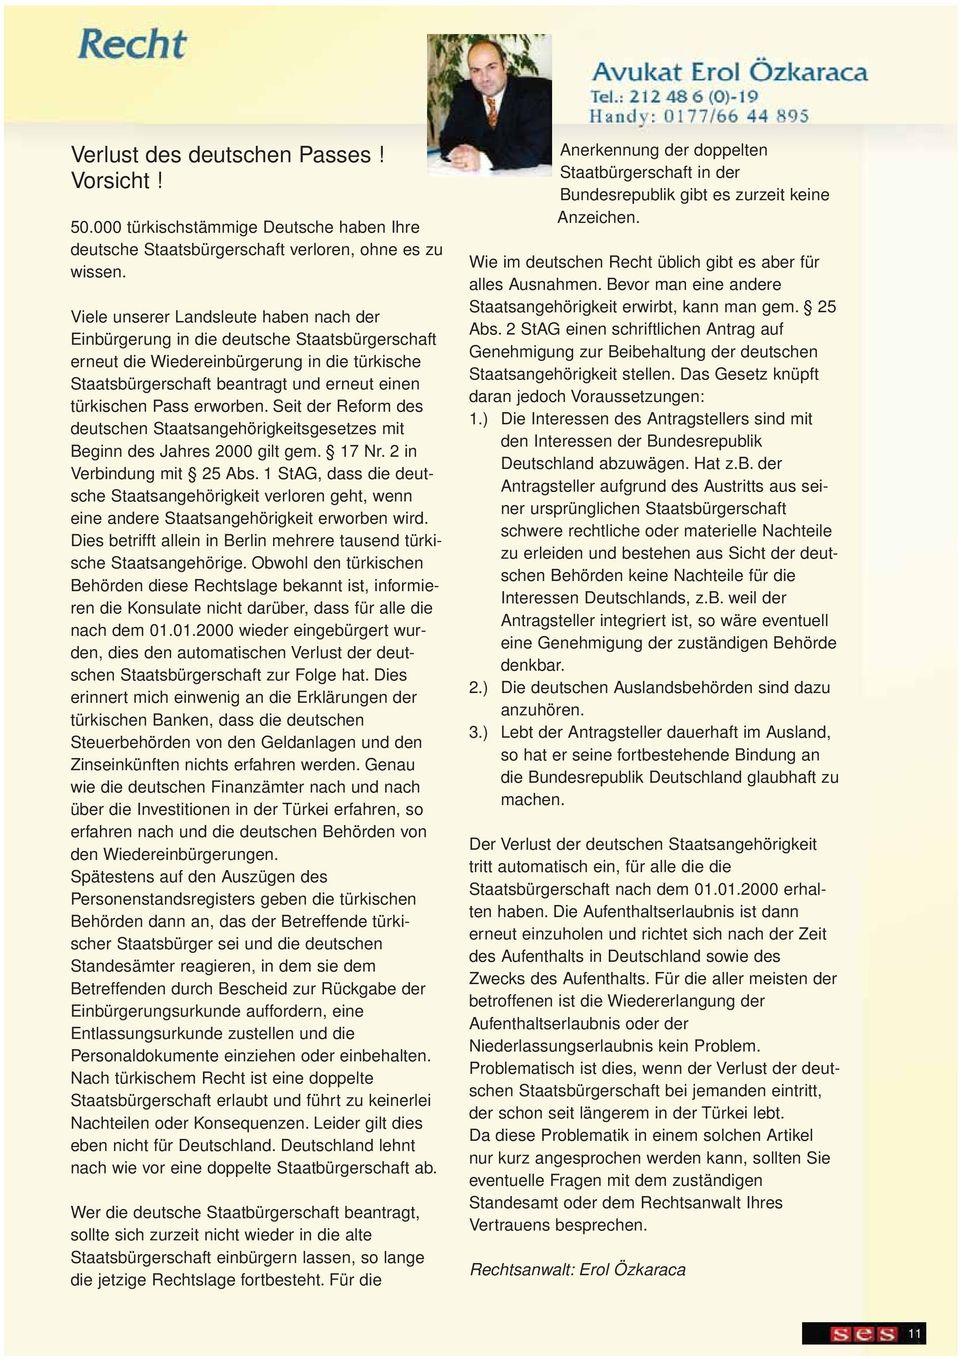 erworben. Seit der Reform des deutschen Staatsangehörigkeitsgesetzes mit Beginn des Jahres 2000 gilt gem. 17 Nr. 2 in Verbindung mit 25 Abs.